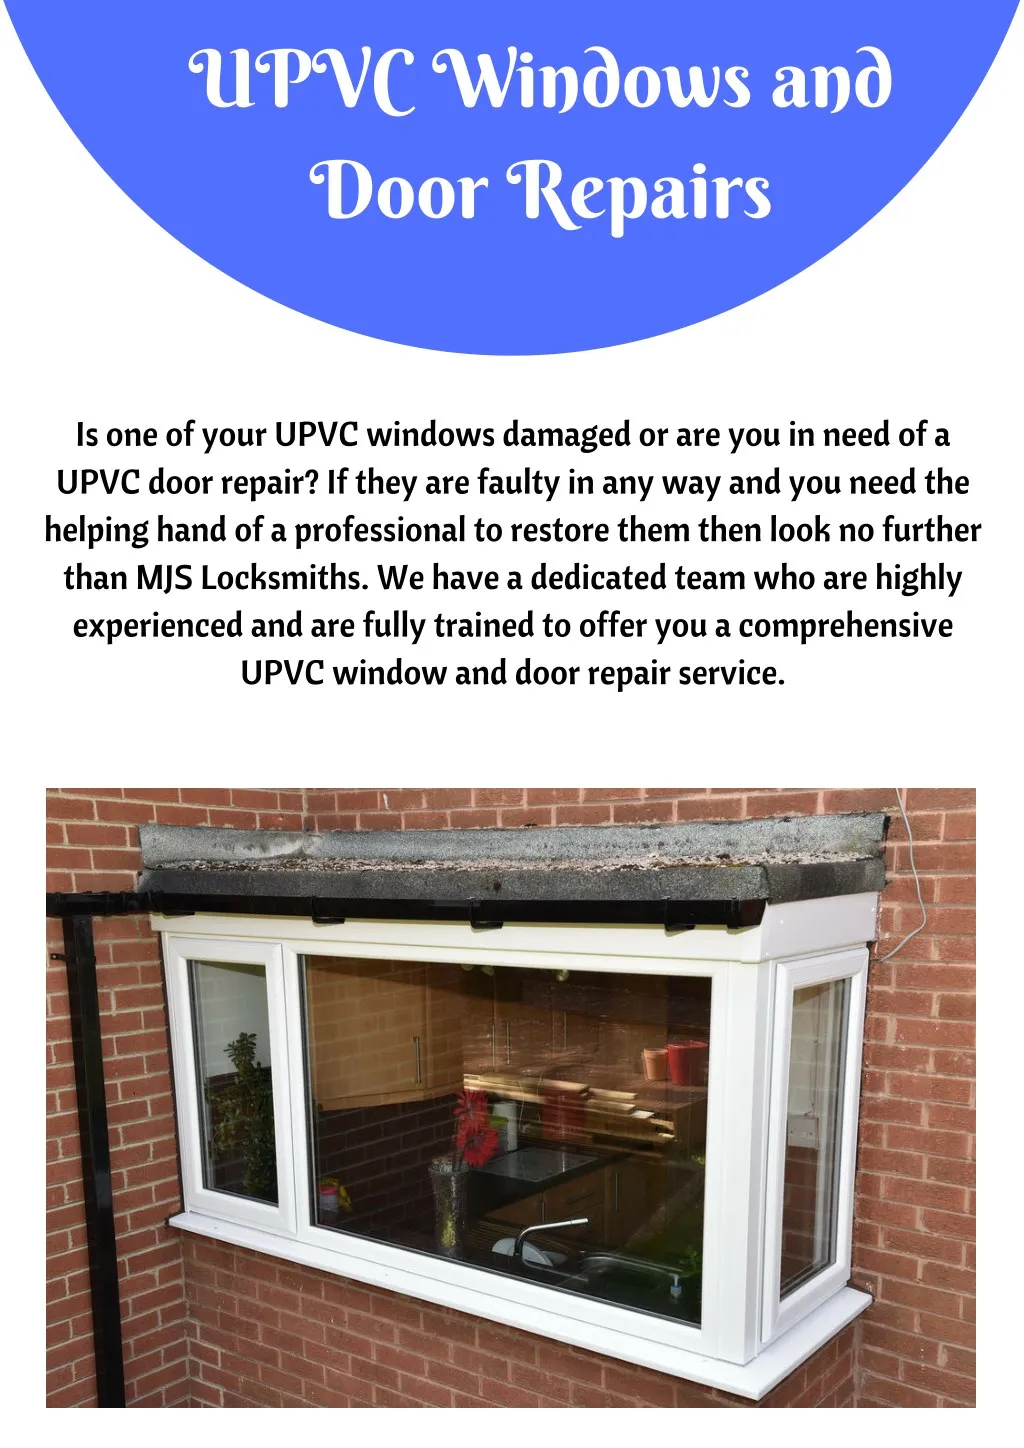 upvc windows and door repairs